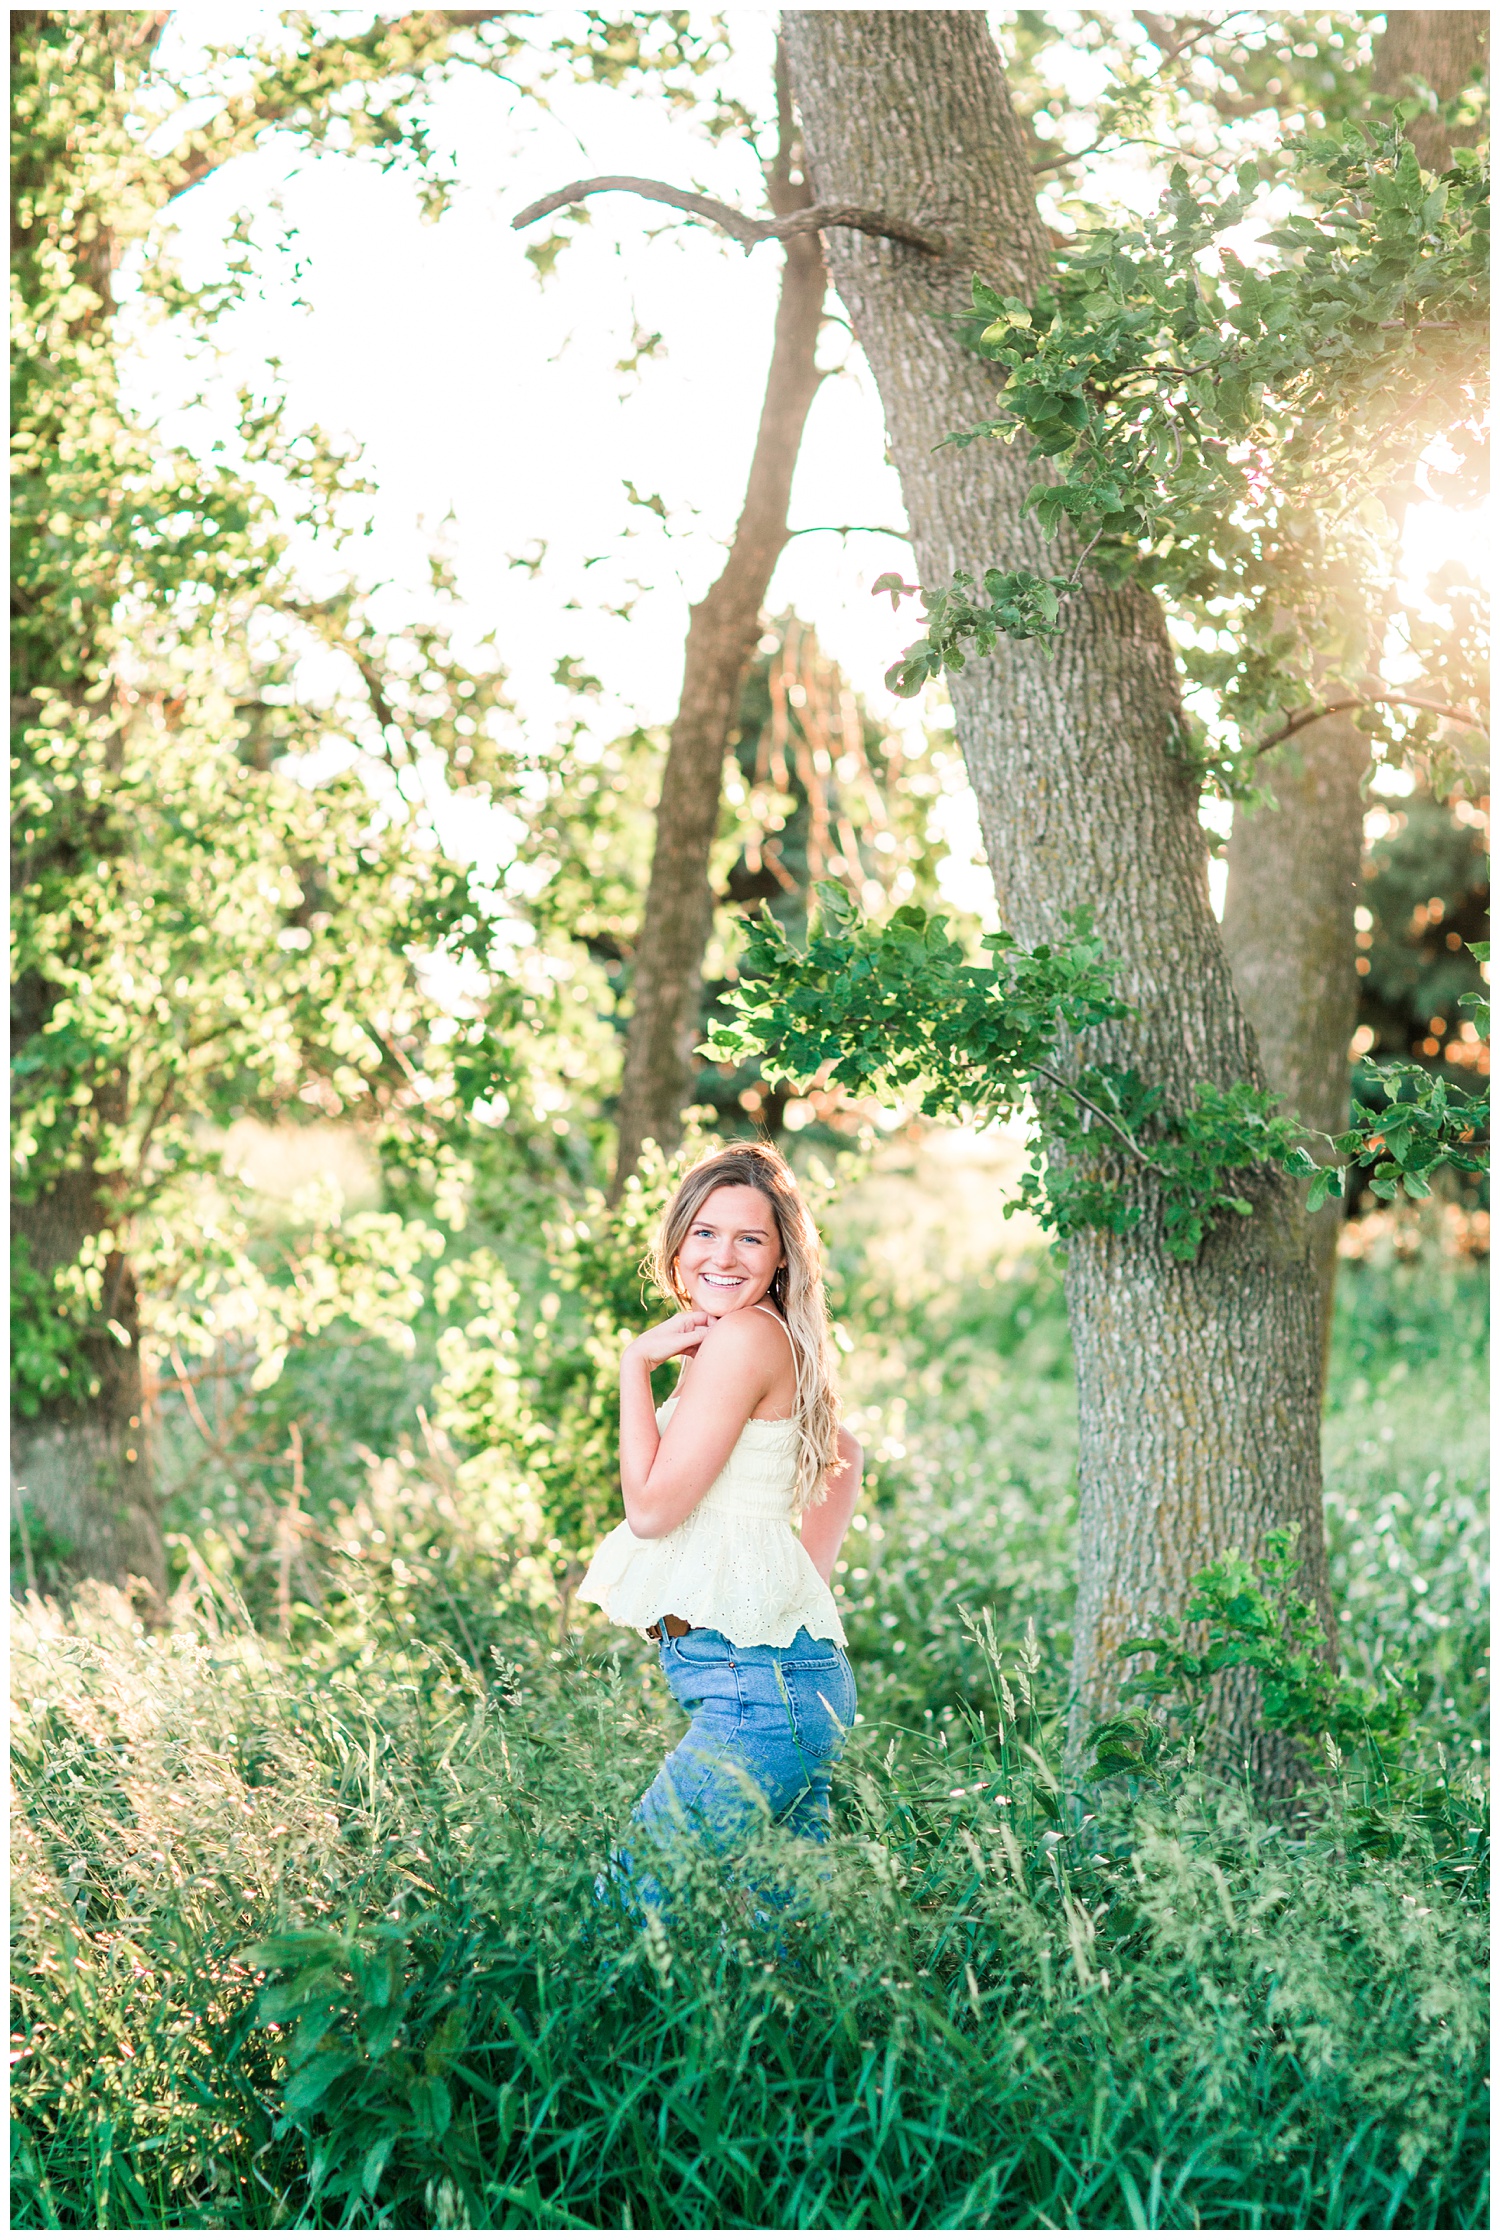 Senior girl posing in a grassy field | CB Studio